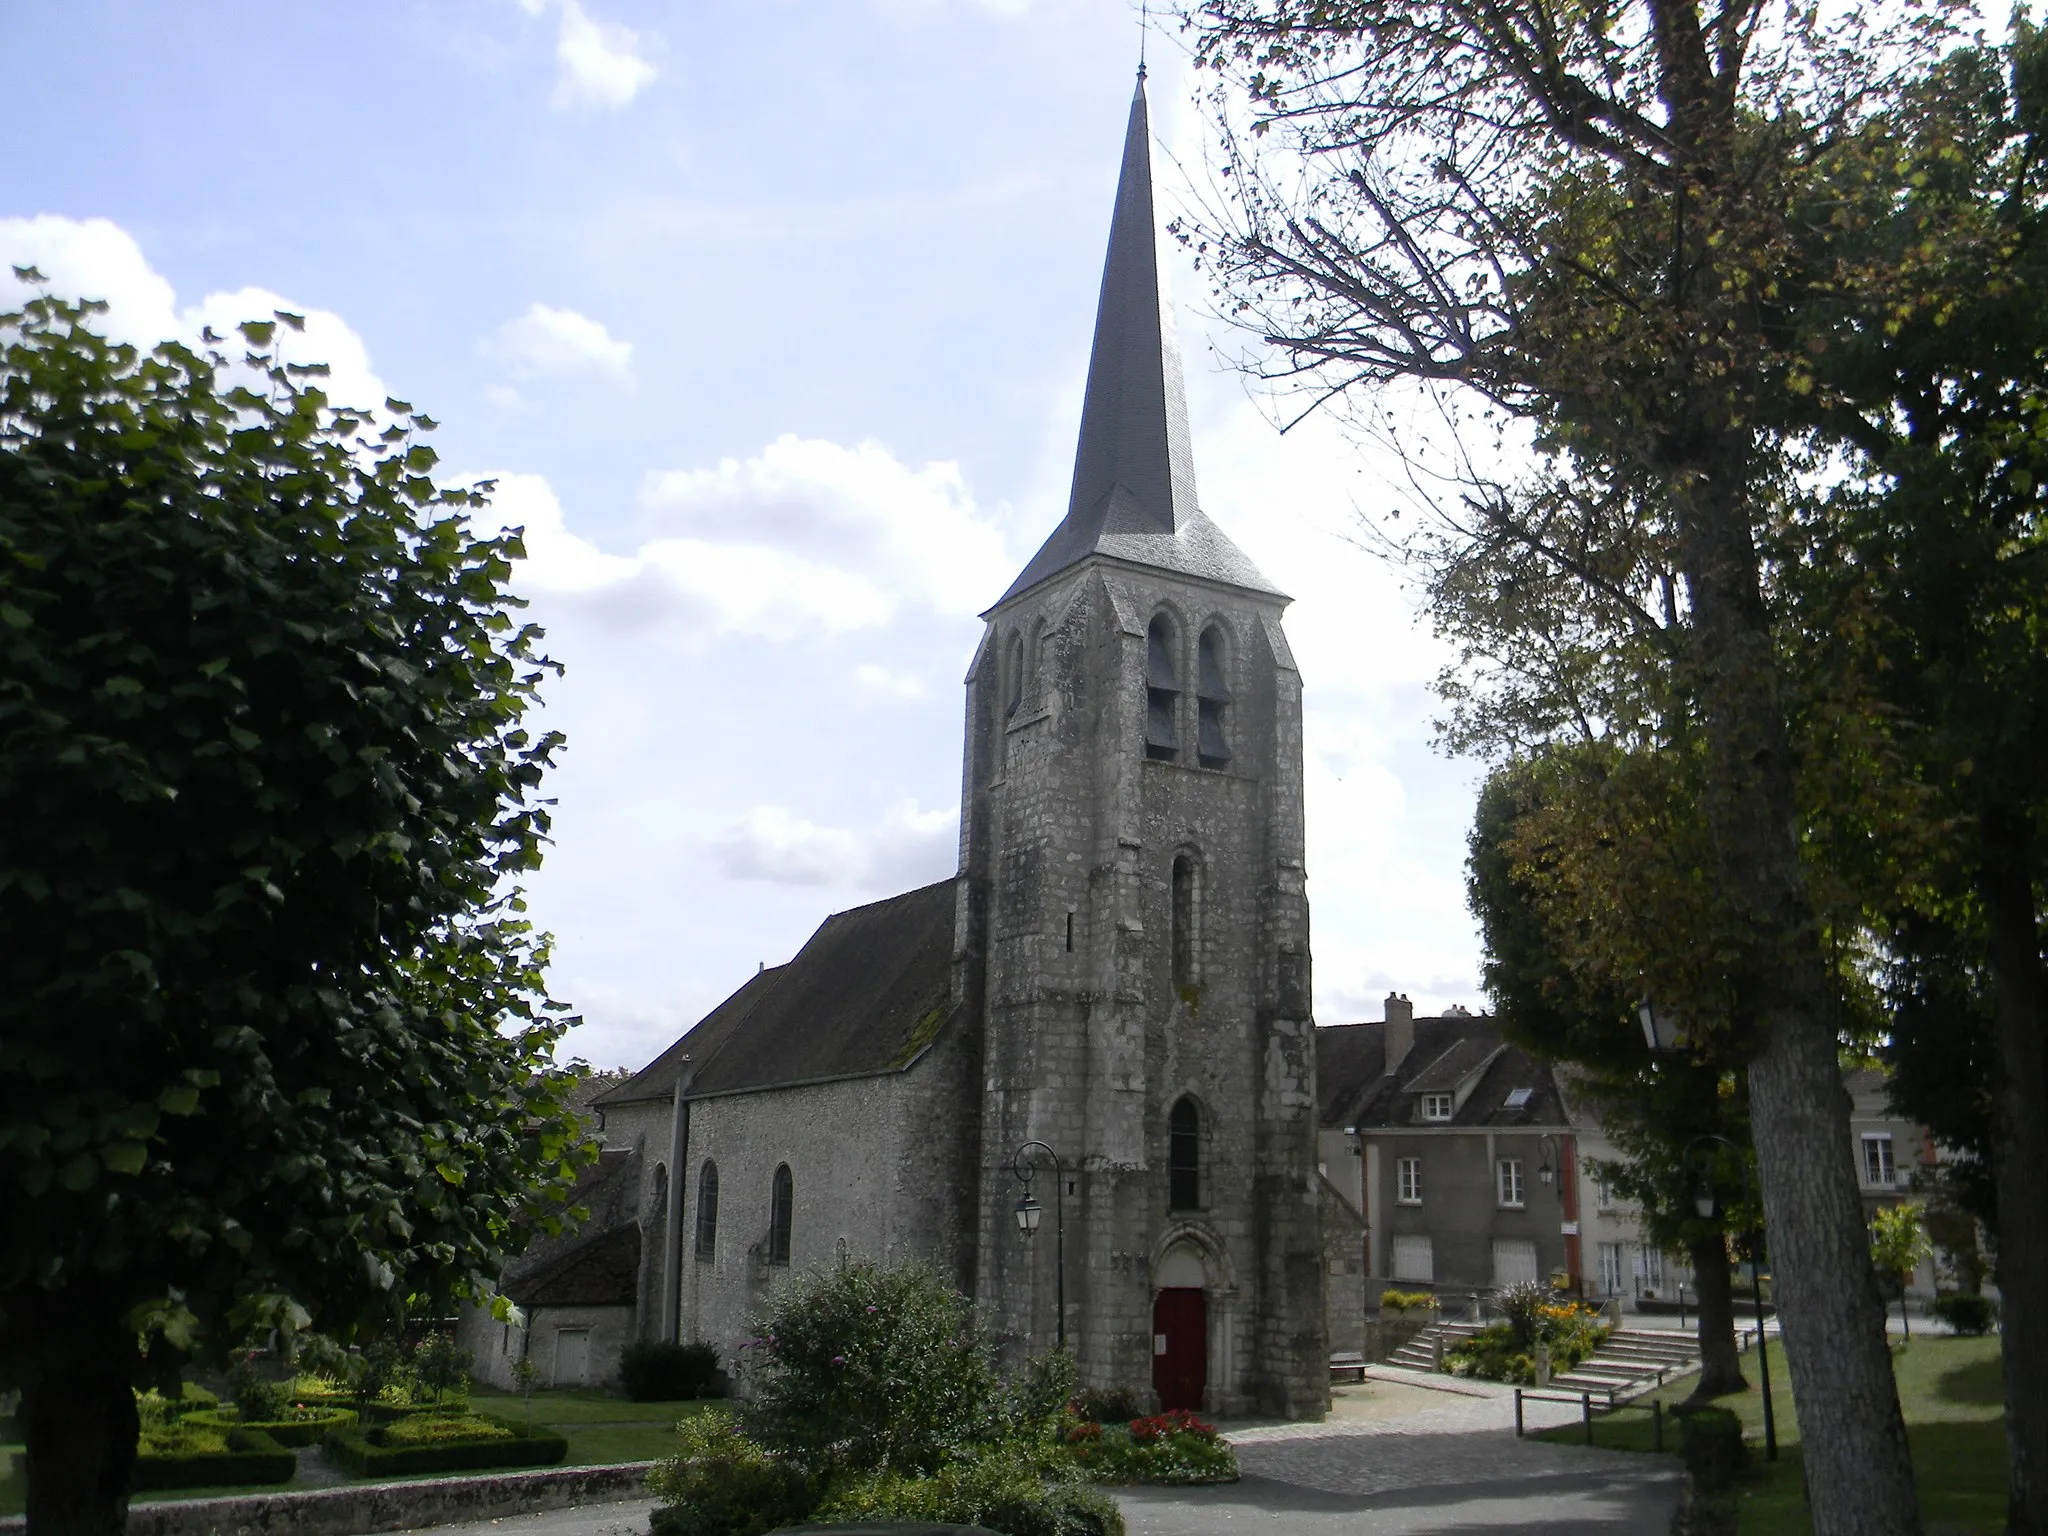 Image of Saint-Pierre-lès-Nemours